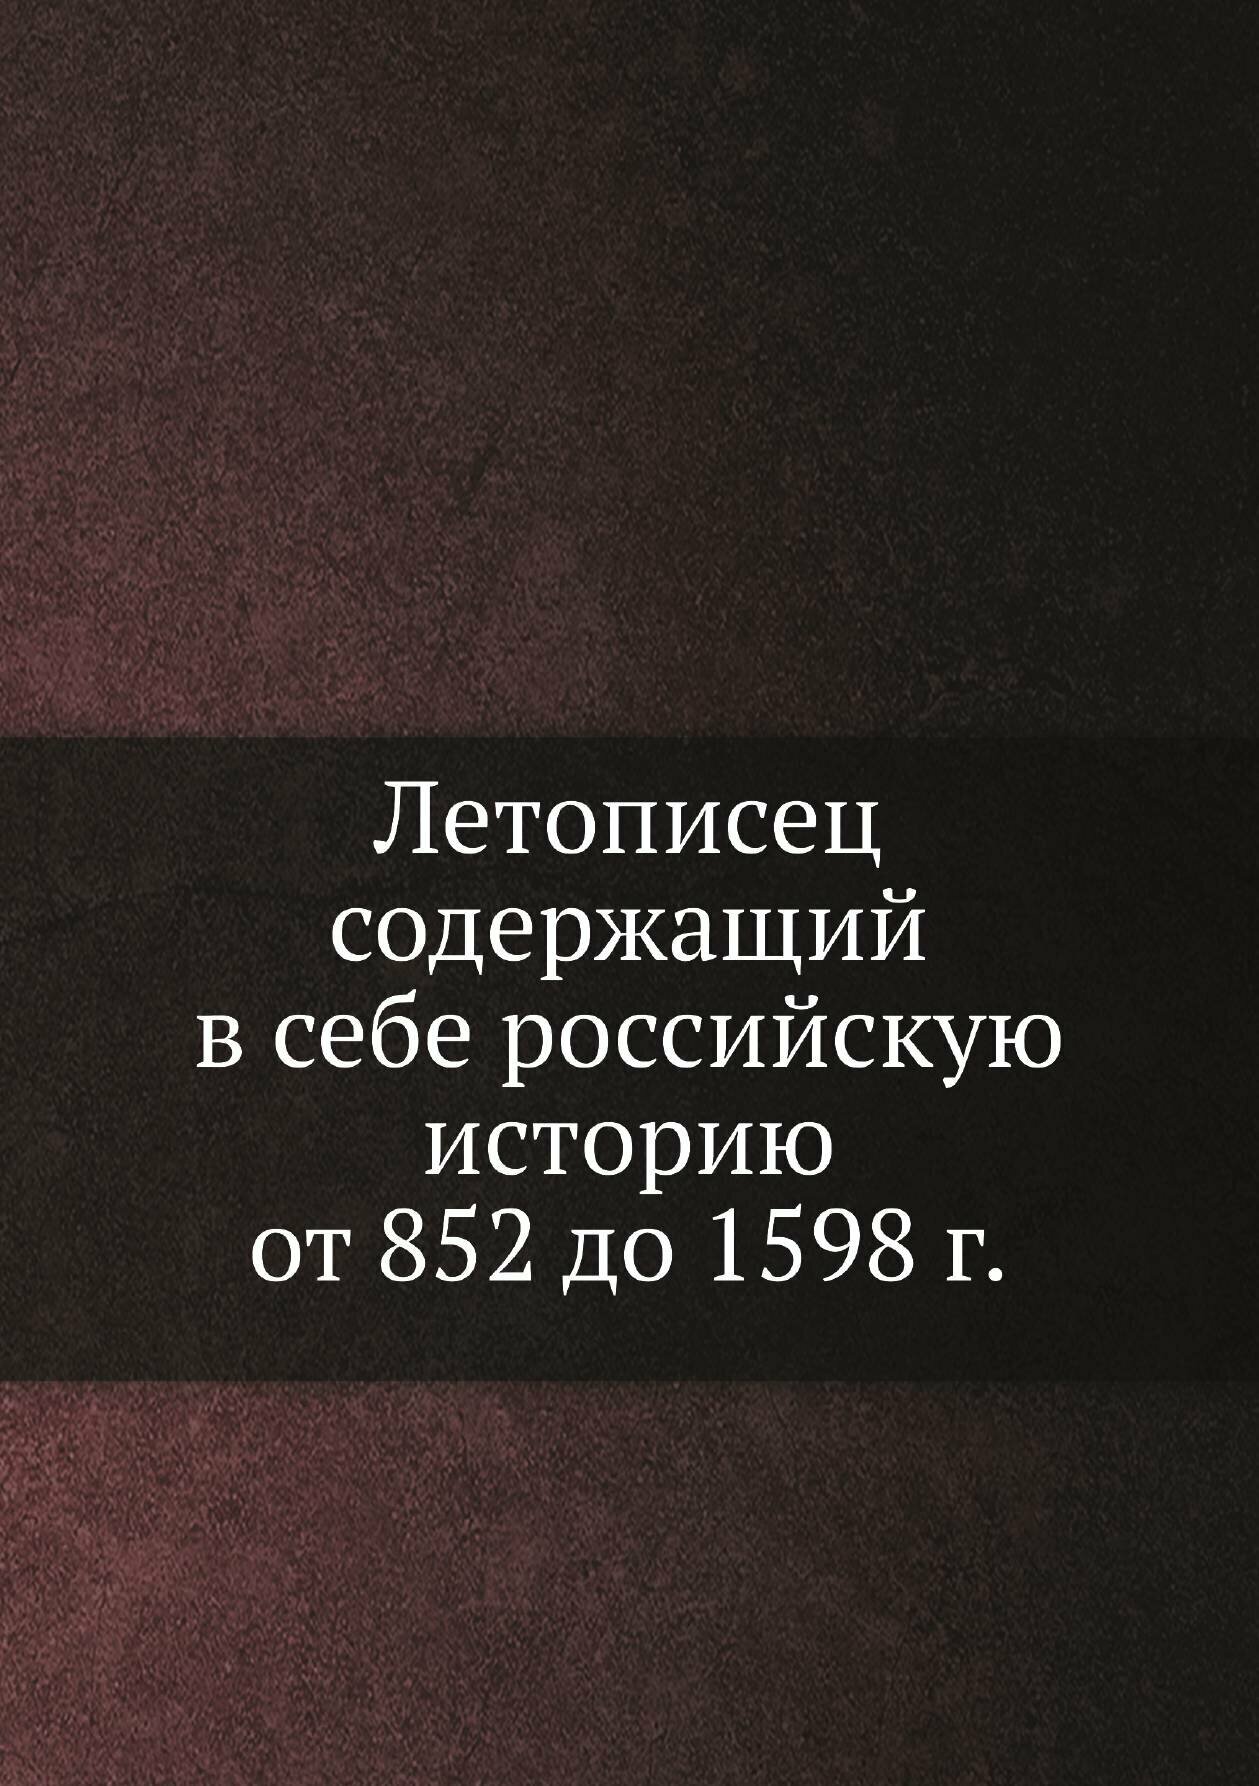 Летописец содержащий в себе российскую историю от 852 до 1598 г.